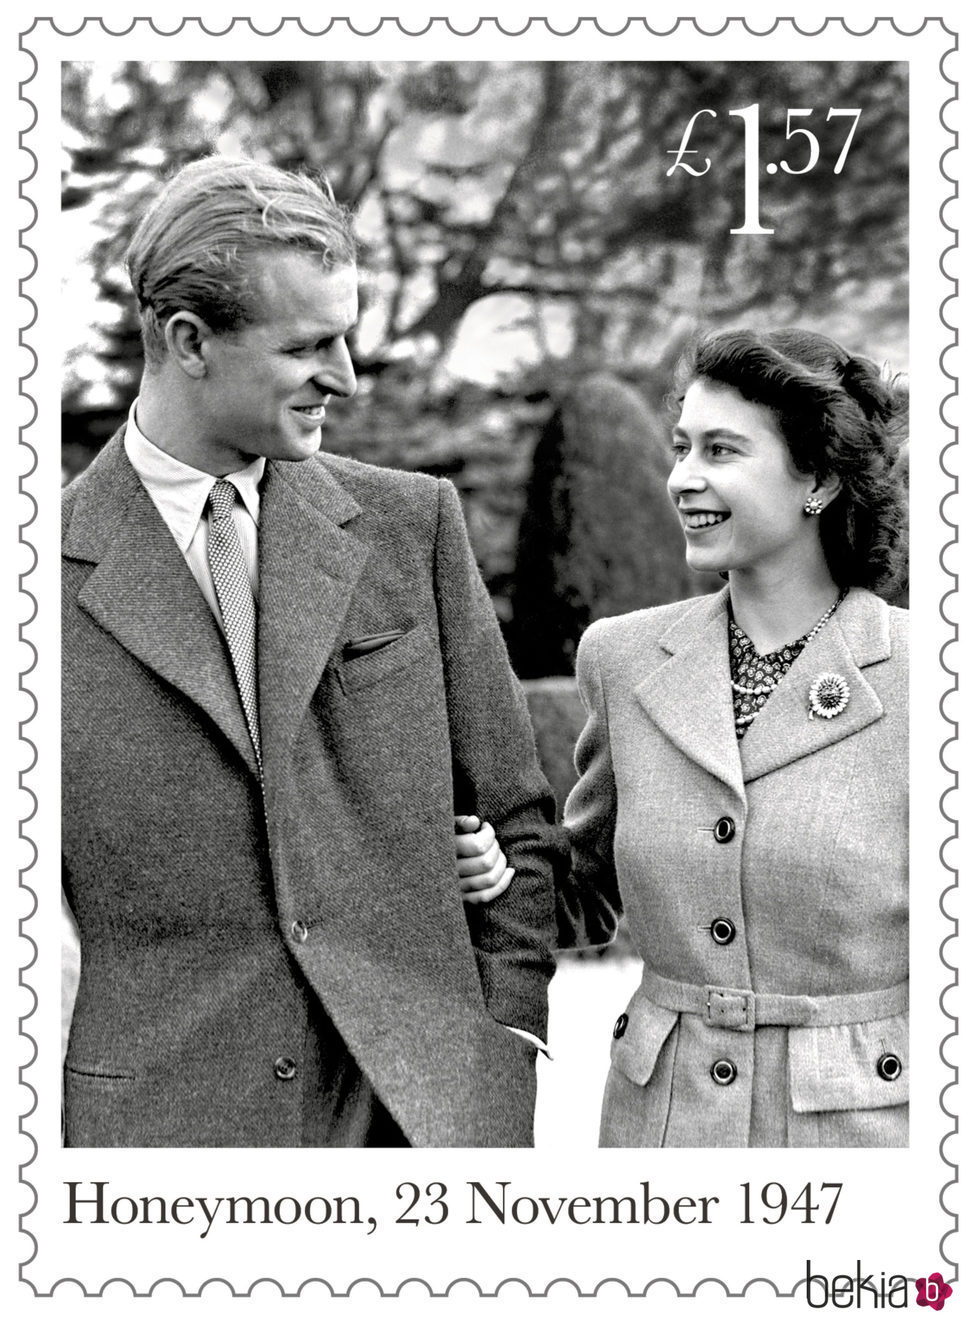 Sello conmemorativo con una foto durante la luna de miel de la Reina Isabel y el Duque de Edimburgo por su 70 aniversario de boda